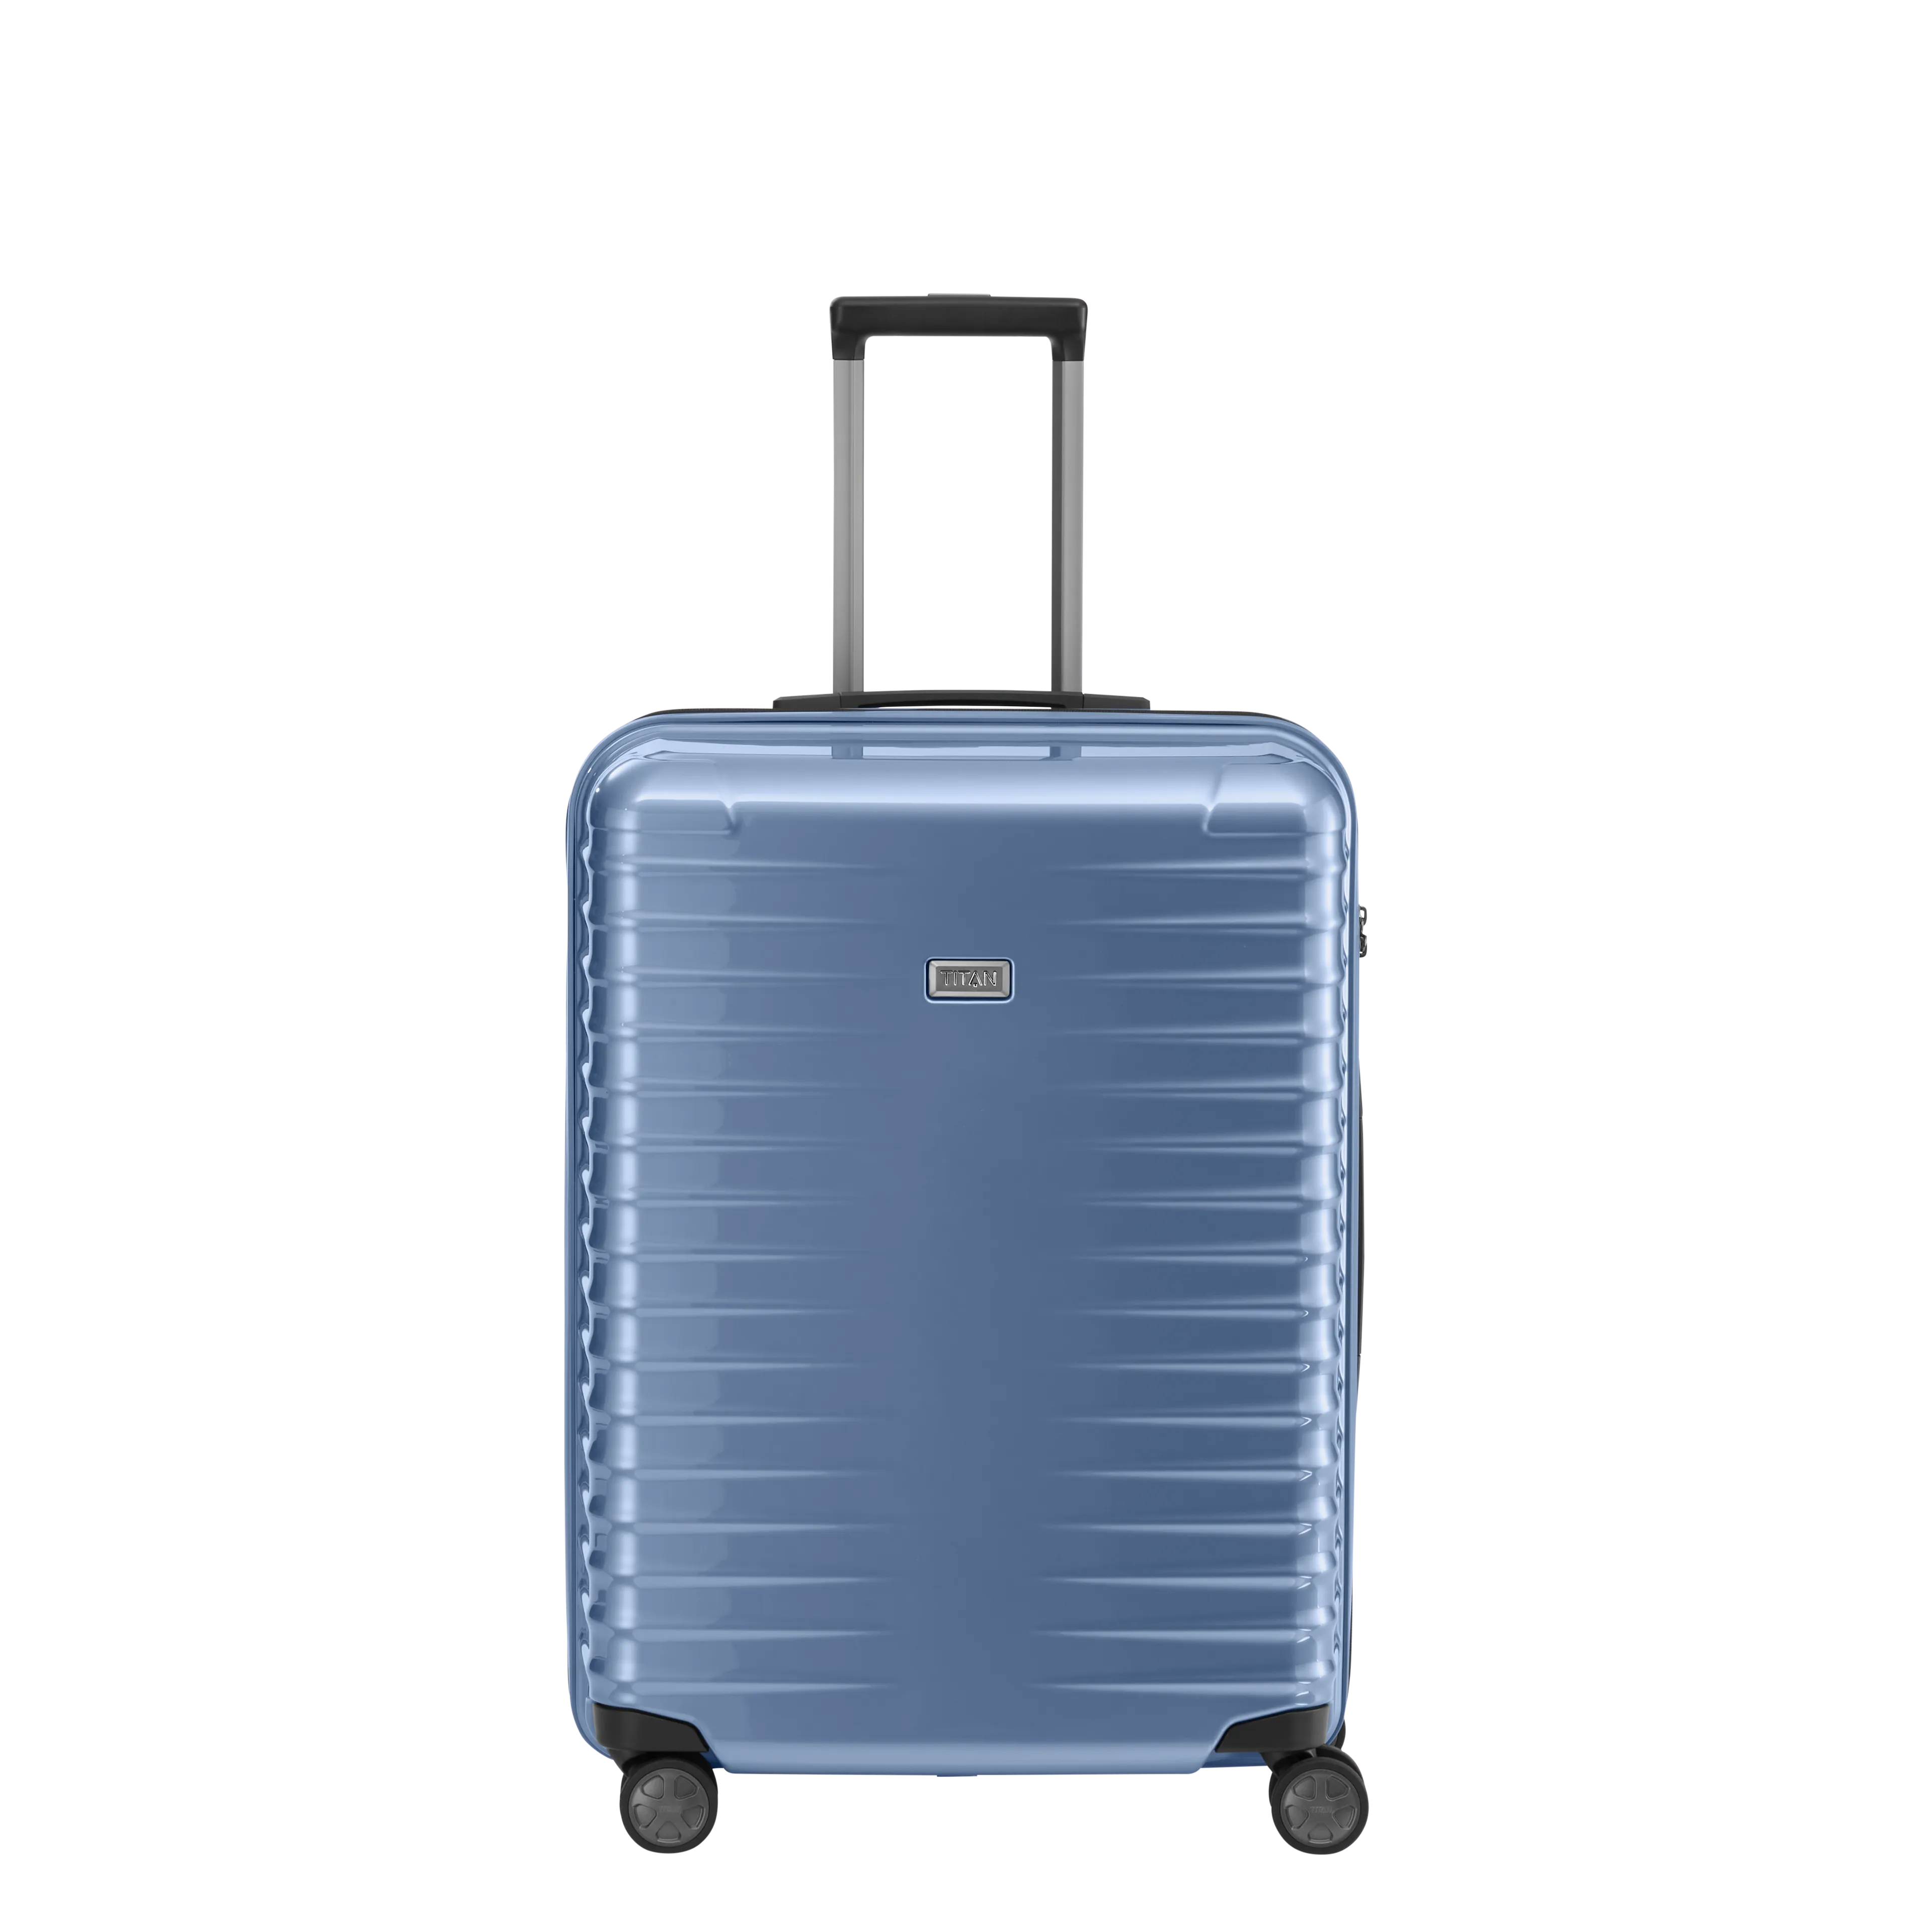 Ein TITAN Koffer der Serie LITRON Frontansicht in eisblau Größe M 69cm